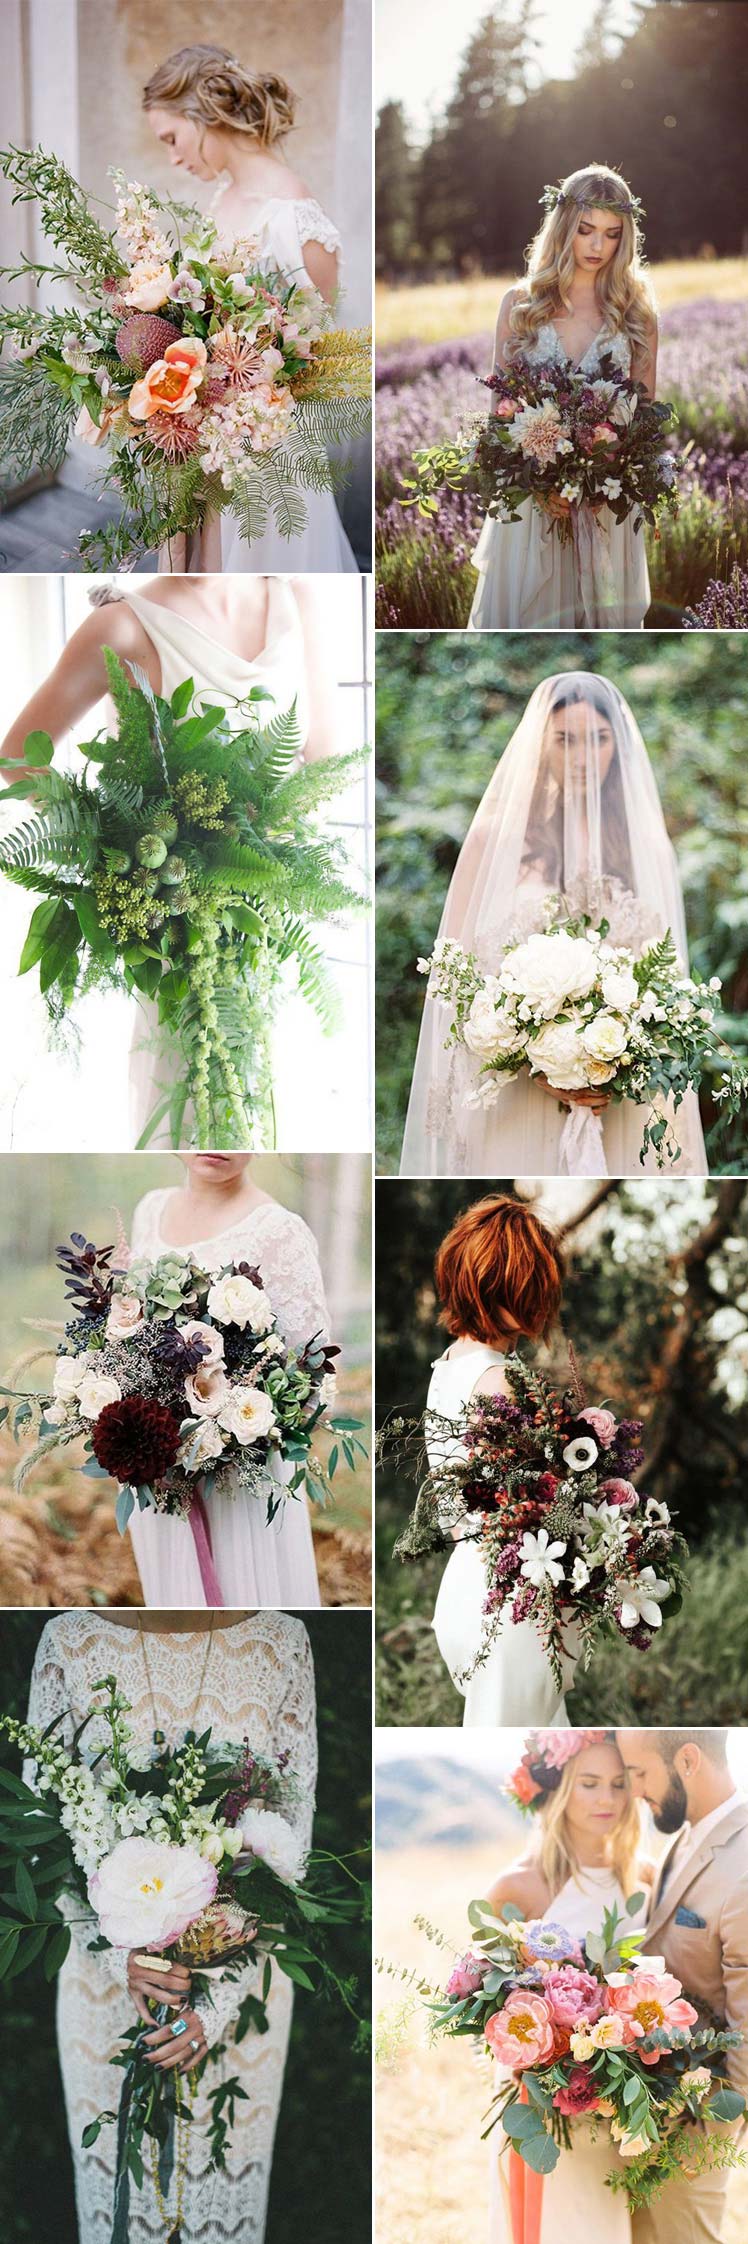 Oversized wedding bouquet inspiration